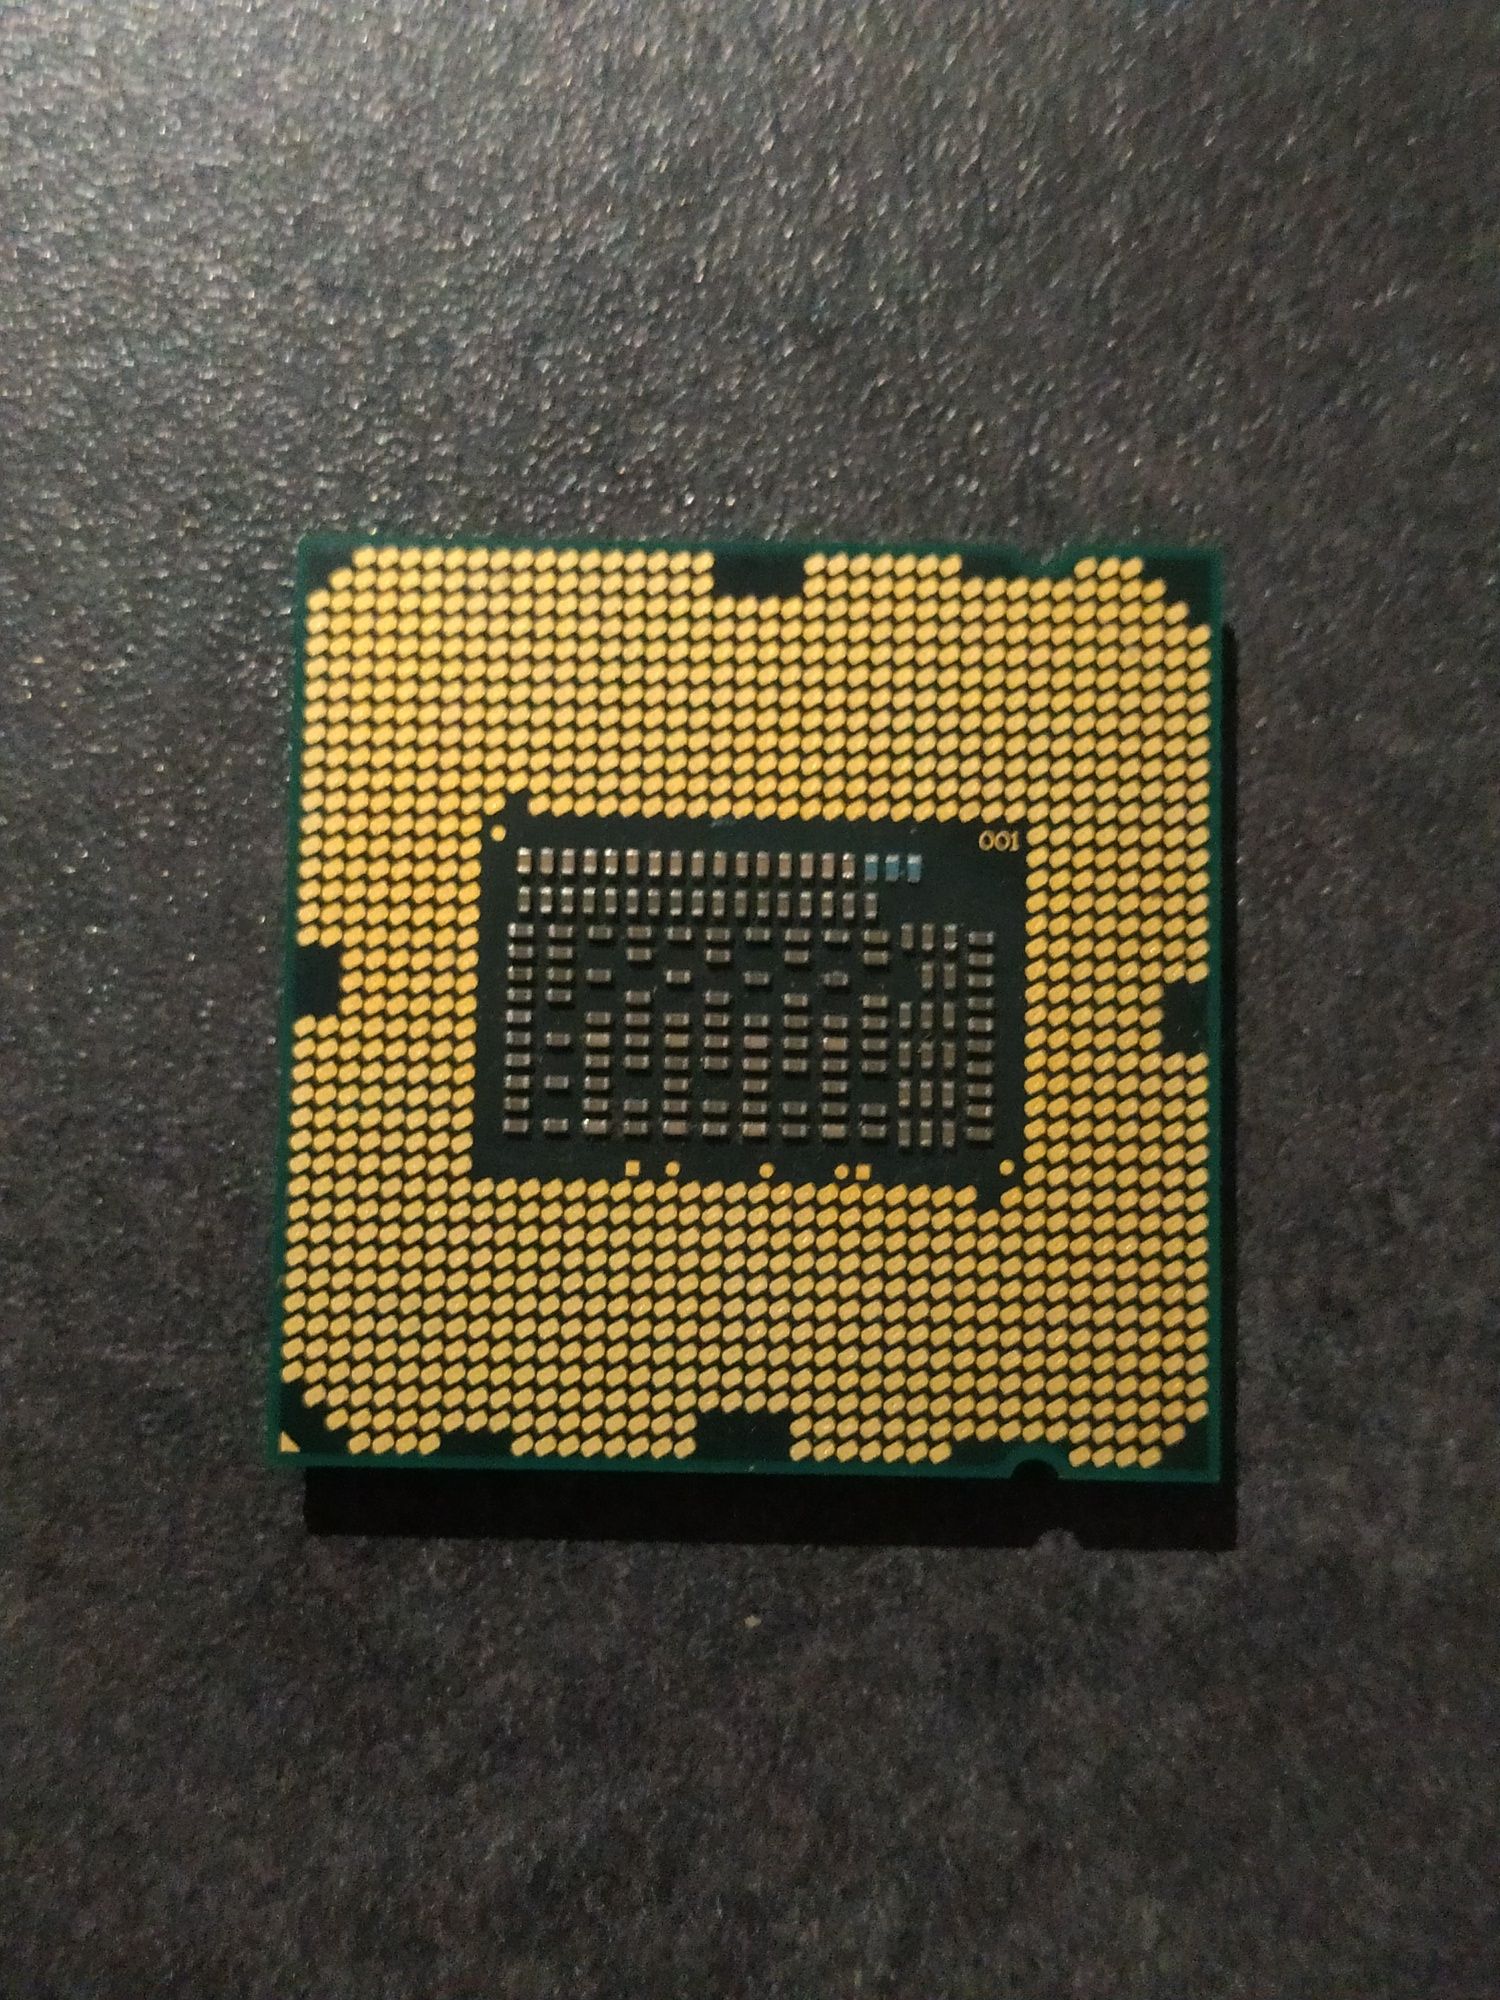 Procesor Intel core i5 2500k 4 rdzenie 3,30 GHz